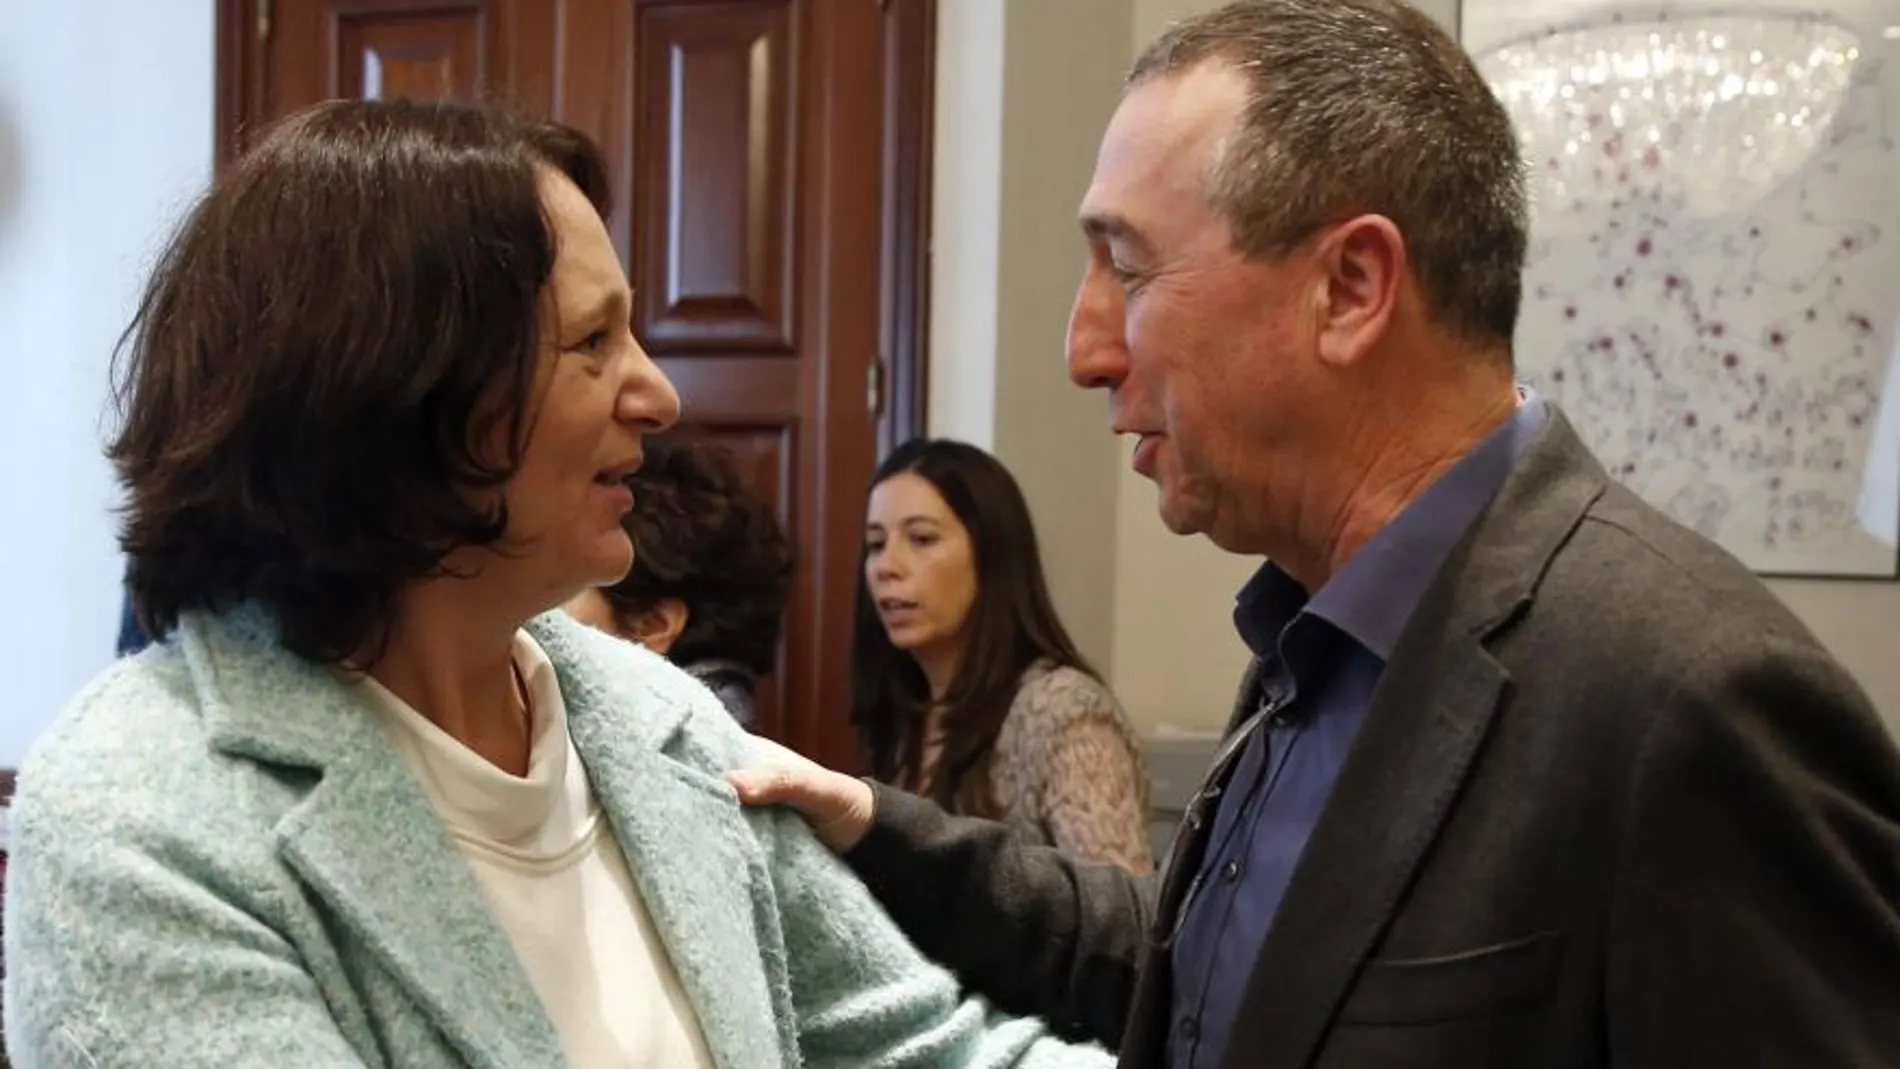 La parlamentaria electa por Podemos, Carolina Bescansa, y el portavoz de Compromís, Joan Baldoví se saludan tras formalizar su acta como diputados hoy en la Cámara Baja.